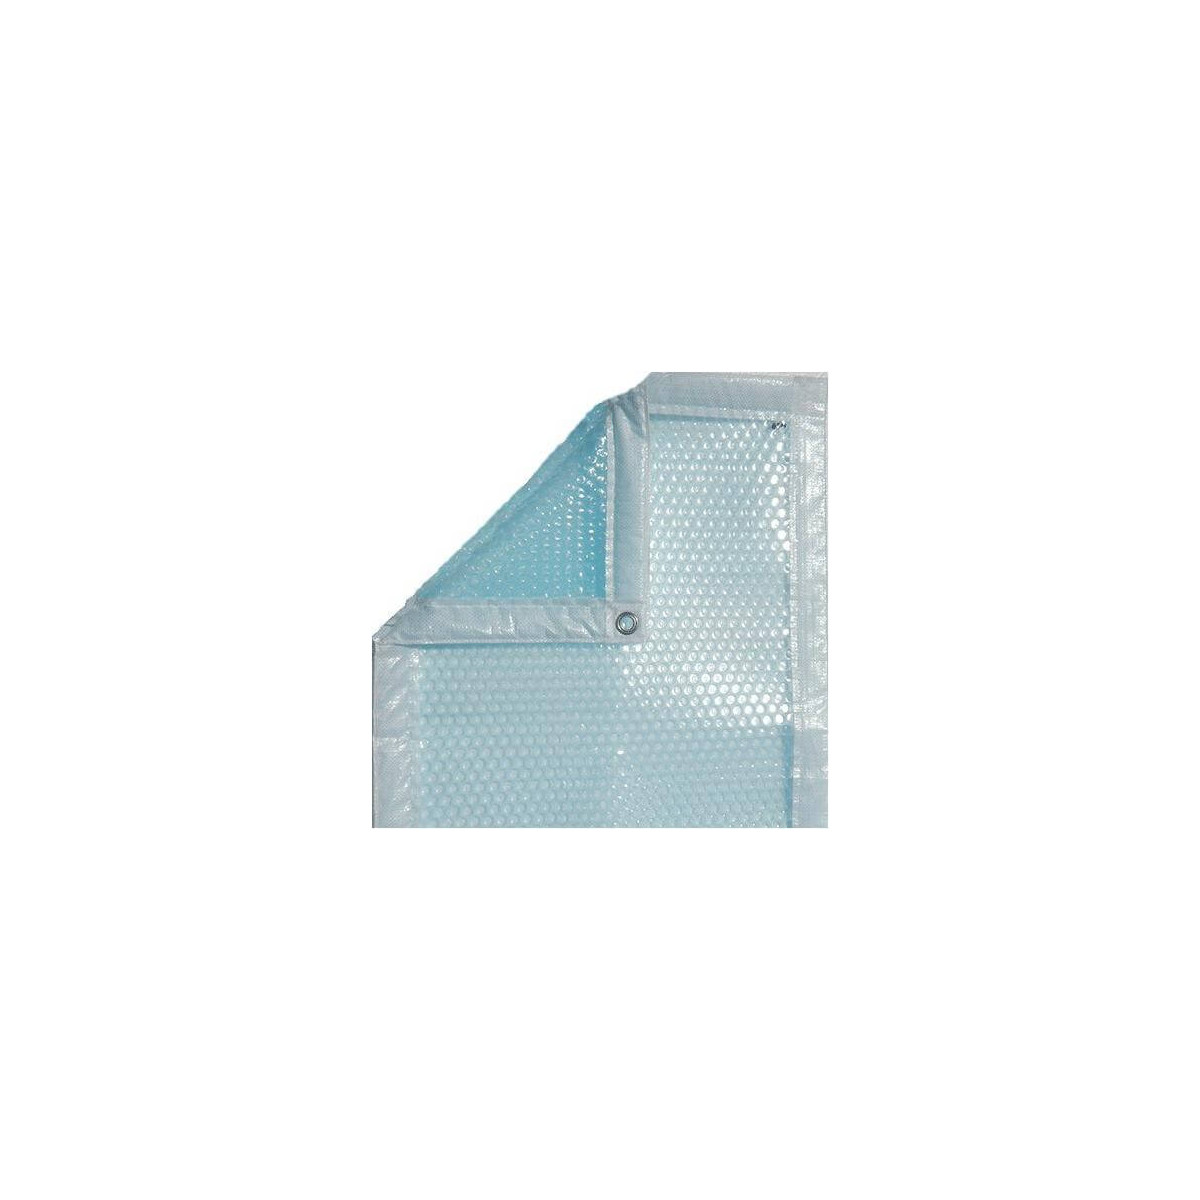 Comprar en linea Protector de suelo PVC Transparente 90x120 cm de marca  AddBlocco • Tienda de Mobiliário de Escritório • AddBlocco